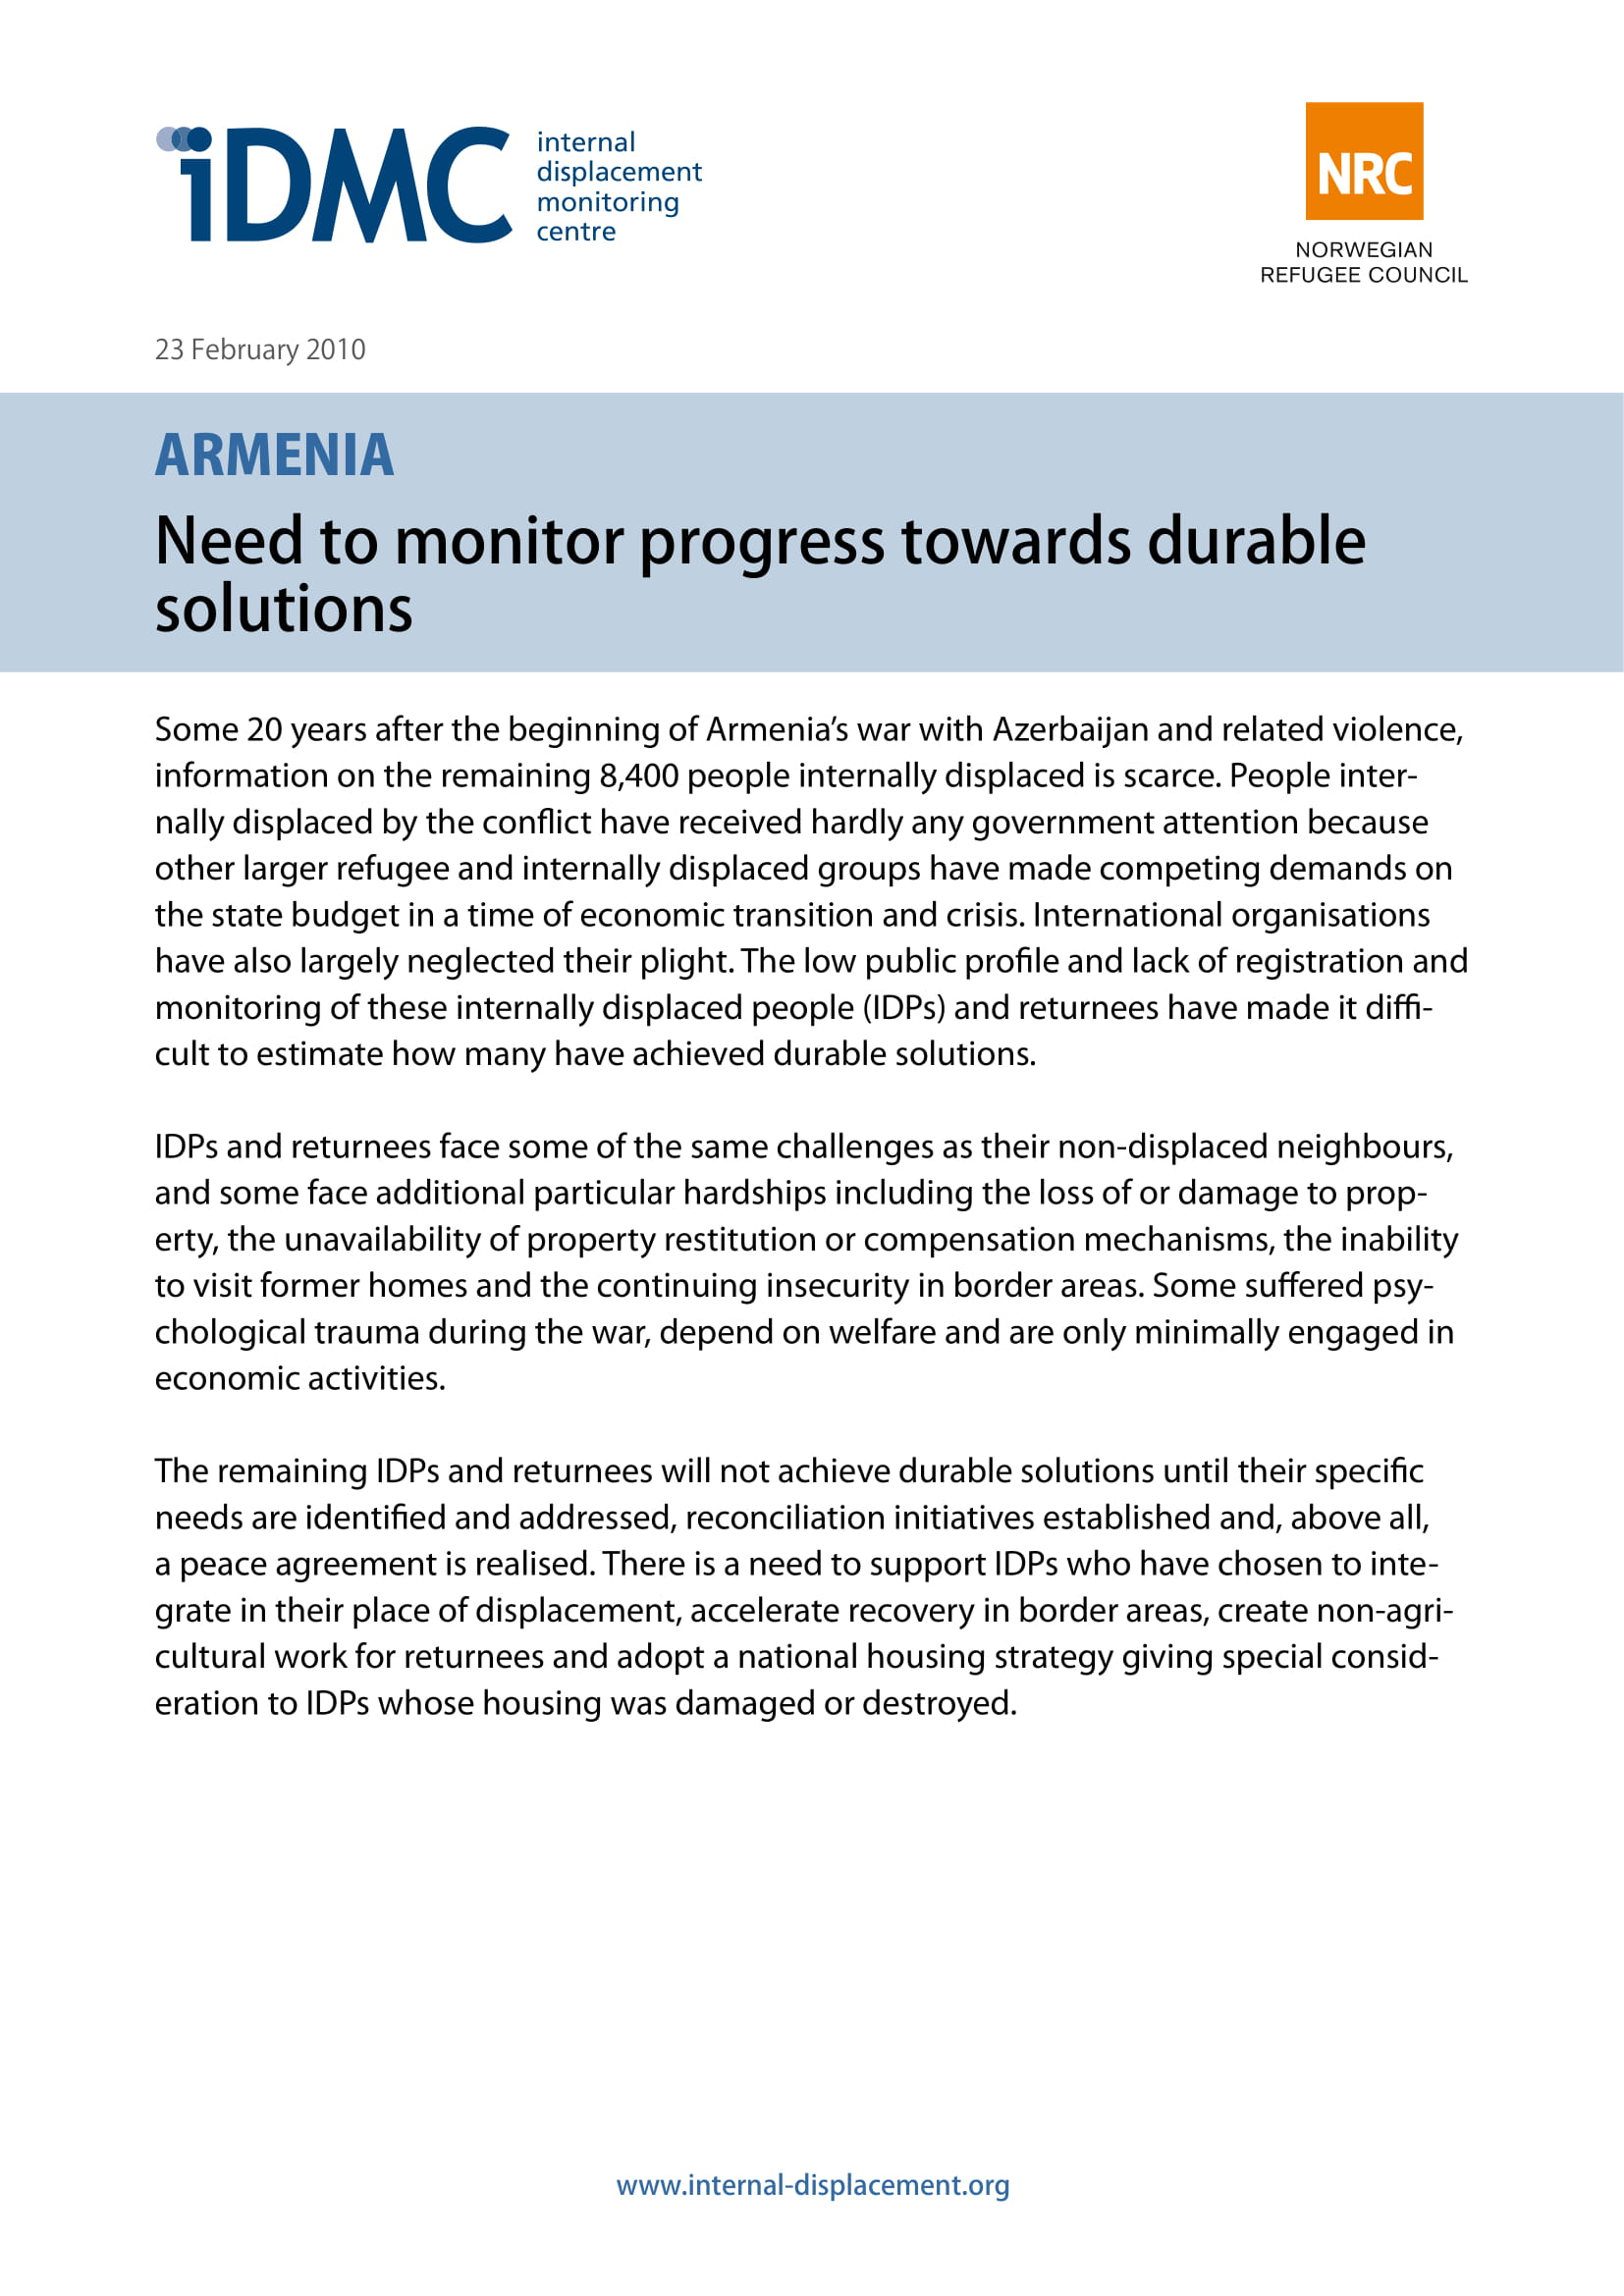 Armenia: Need to monitor progress towards durable solutions